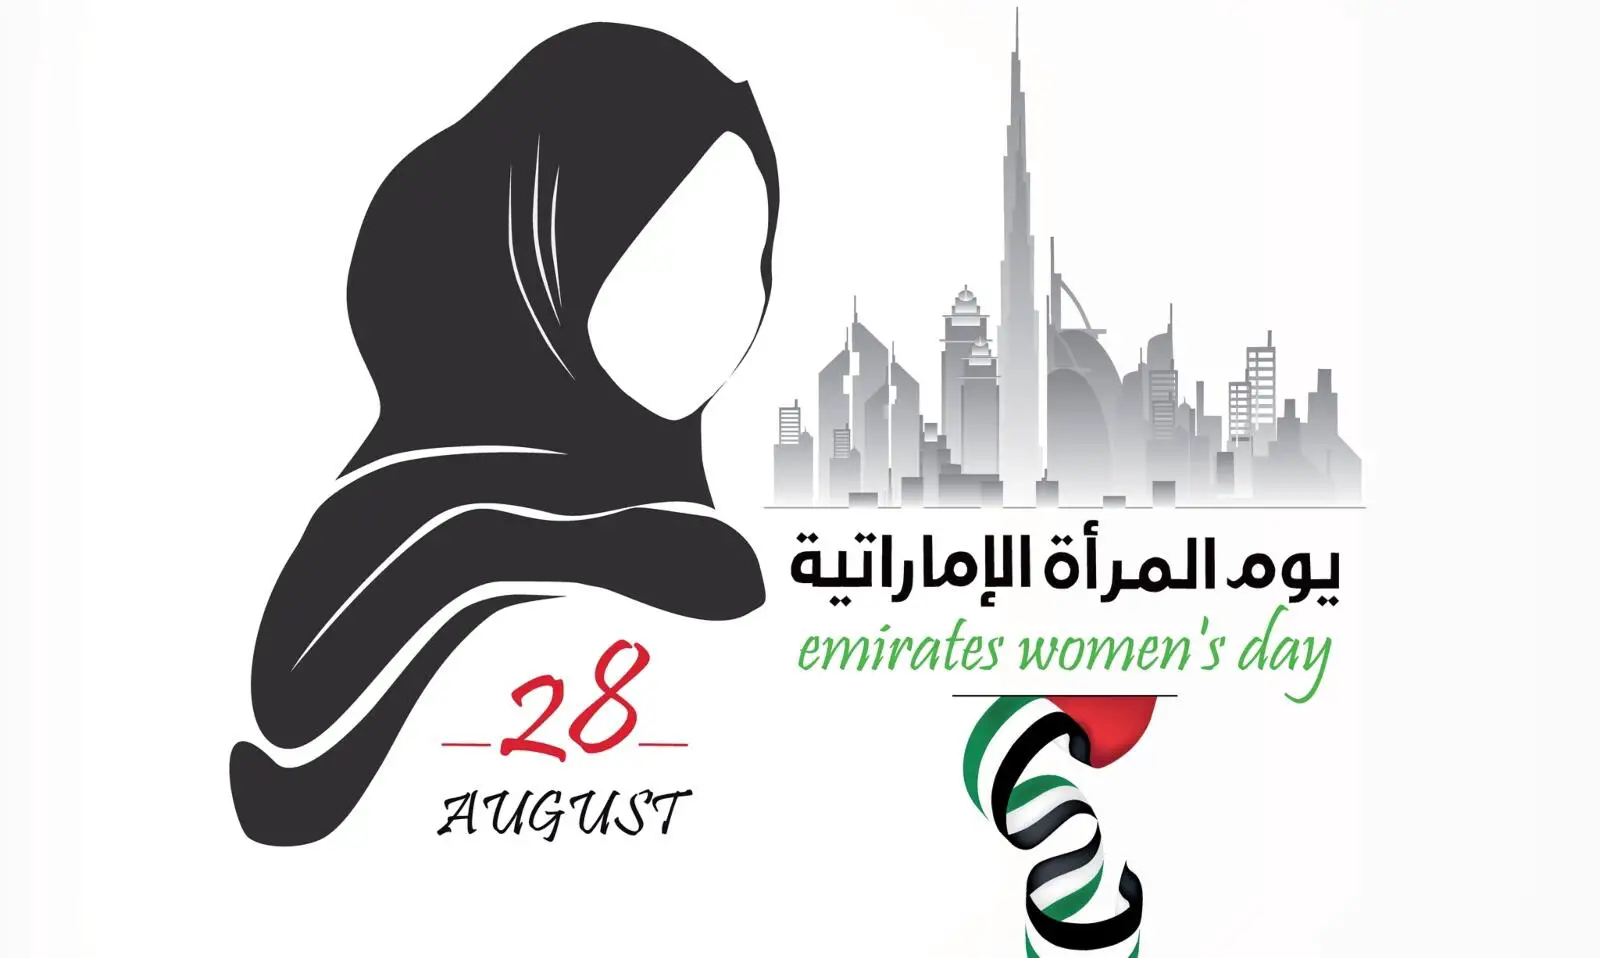 عبارات تهنئة بمناسبة يوم المرأة الإماراتية_0.webp